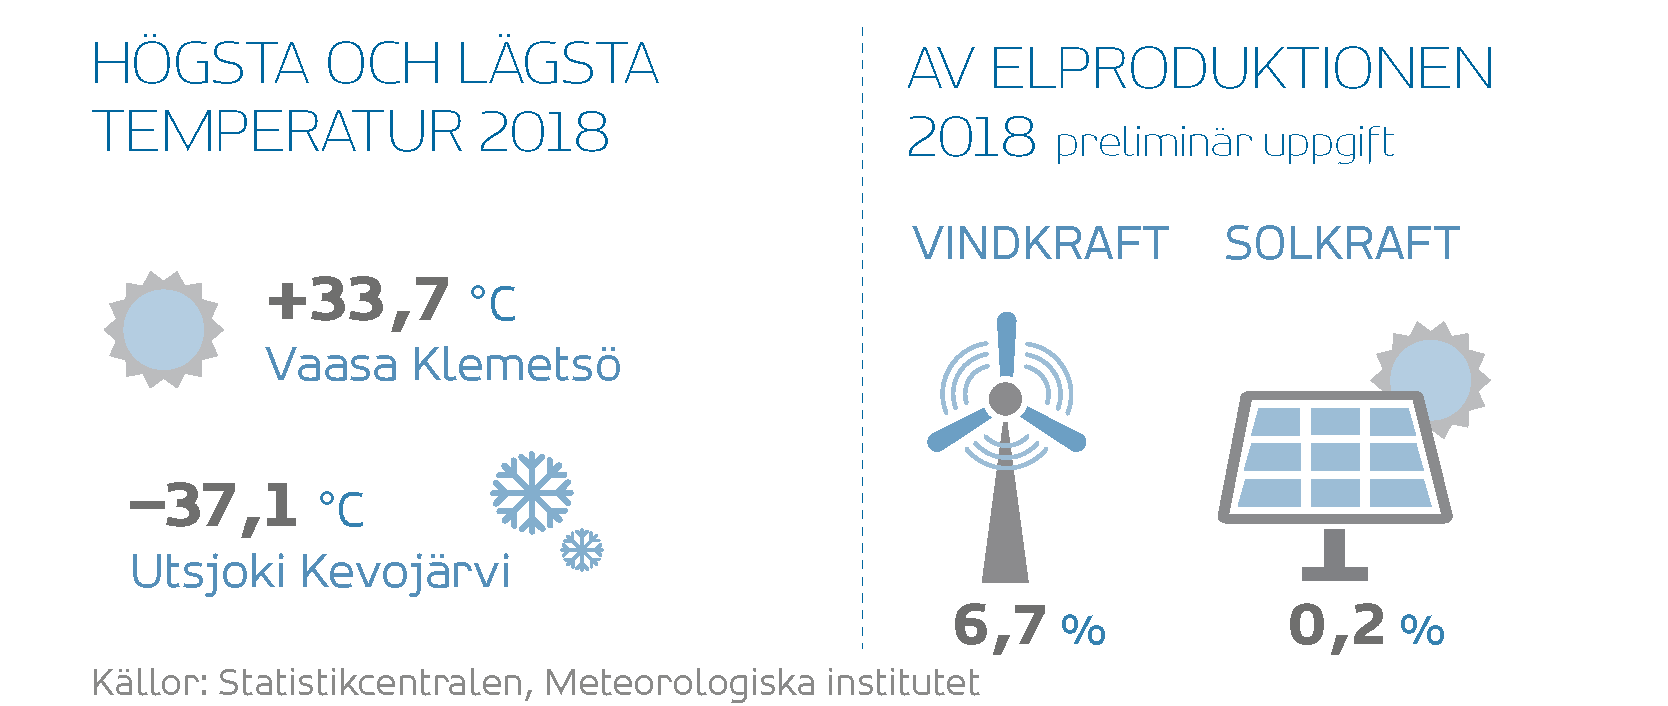 Högsta temperatur 2018: +33,7 °C Vasa Klemetsö.  Lägsta temperatur 2018: –37,1 °C Utsjoki Kevojärvi.  Av elproduktionen 2018 (preliminär uppgift): vindkraft 6,7 %, solkraft 0,2 %. Källor: Statistikcentralen, Meteorologiska institutet. 